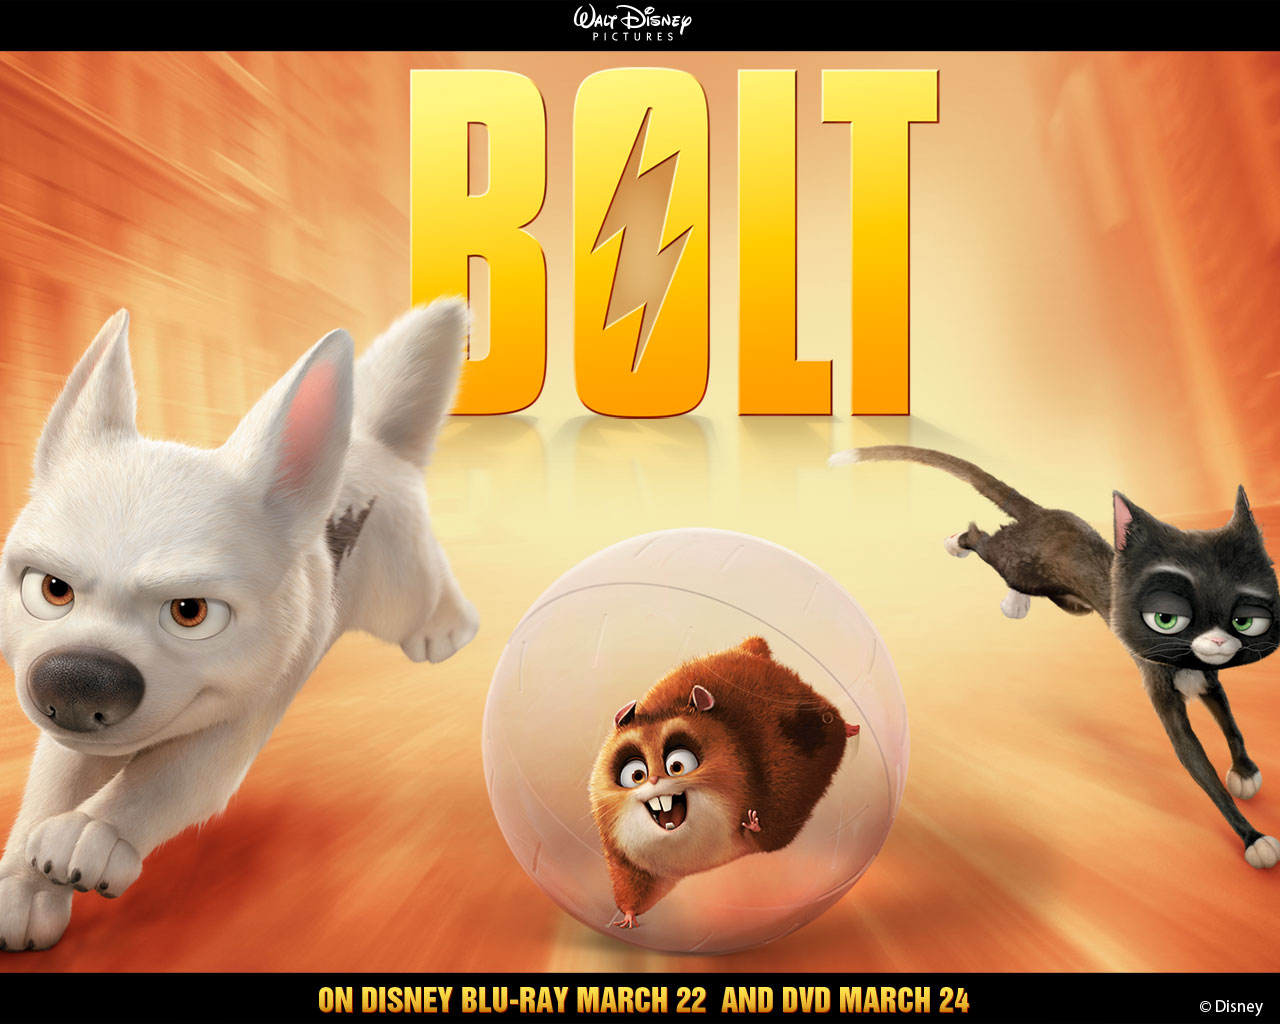 "Bolt" desktop wallpaper number 2 (1280 x 1024 pixels)